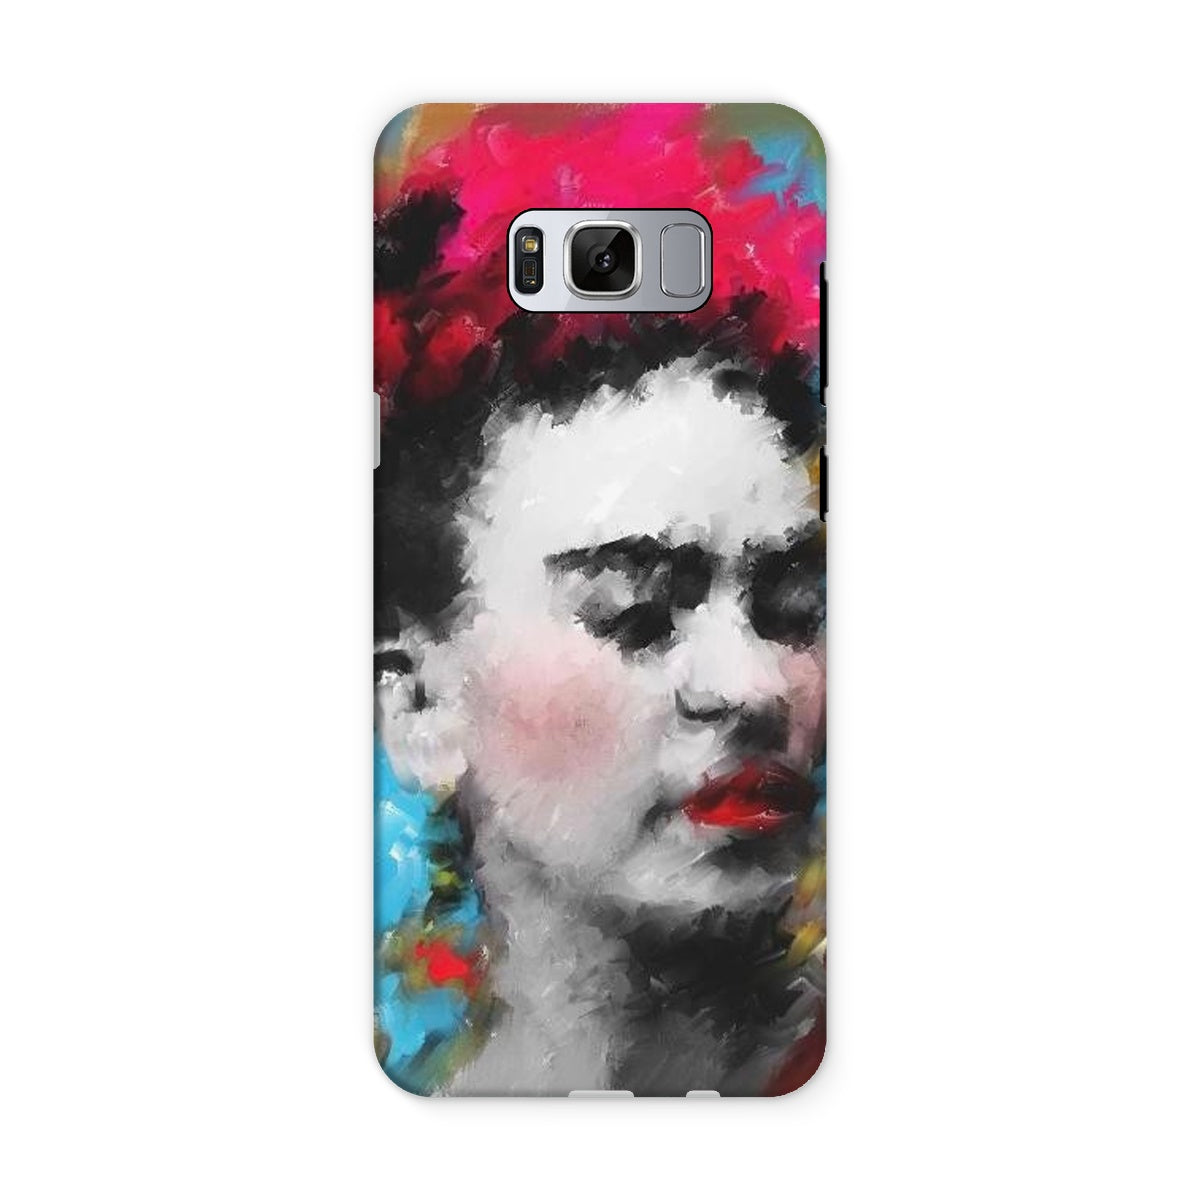 Frida Kahlo - Portrait Tough Phone Case